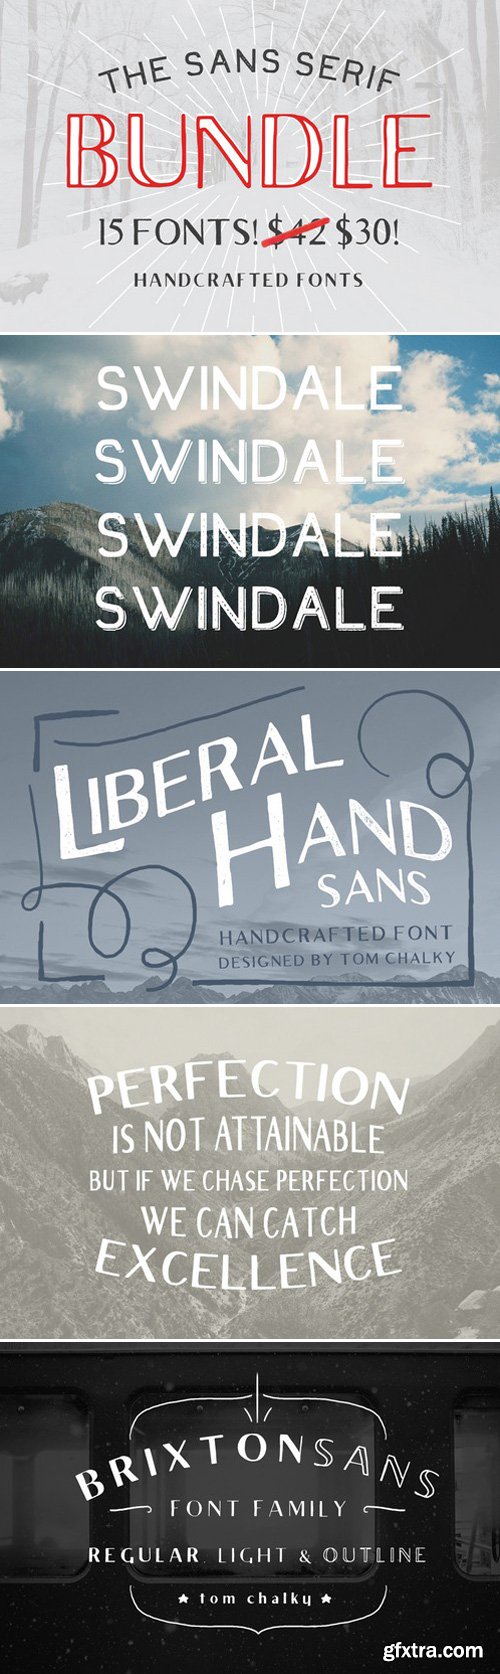 CM - The Sans Serif Bundle - 15 Fonts!